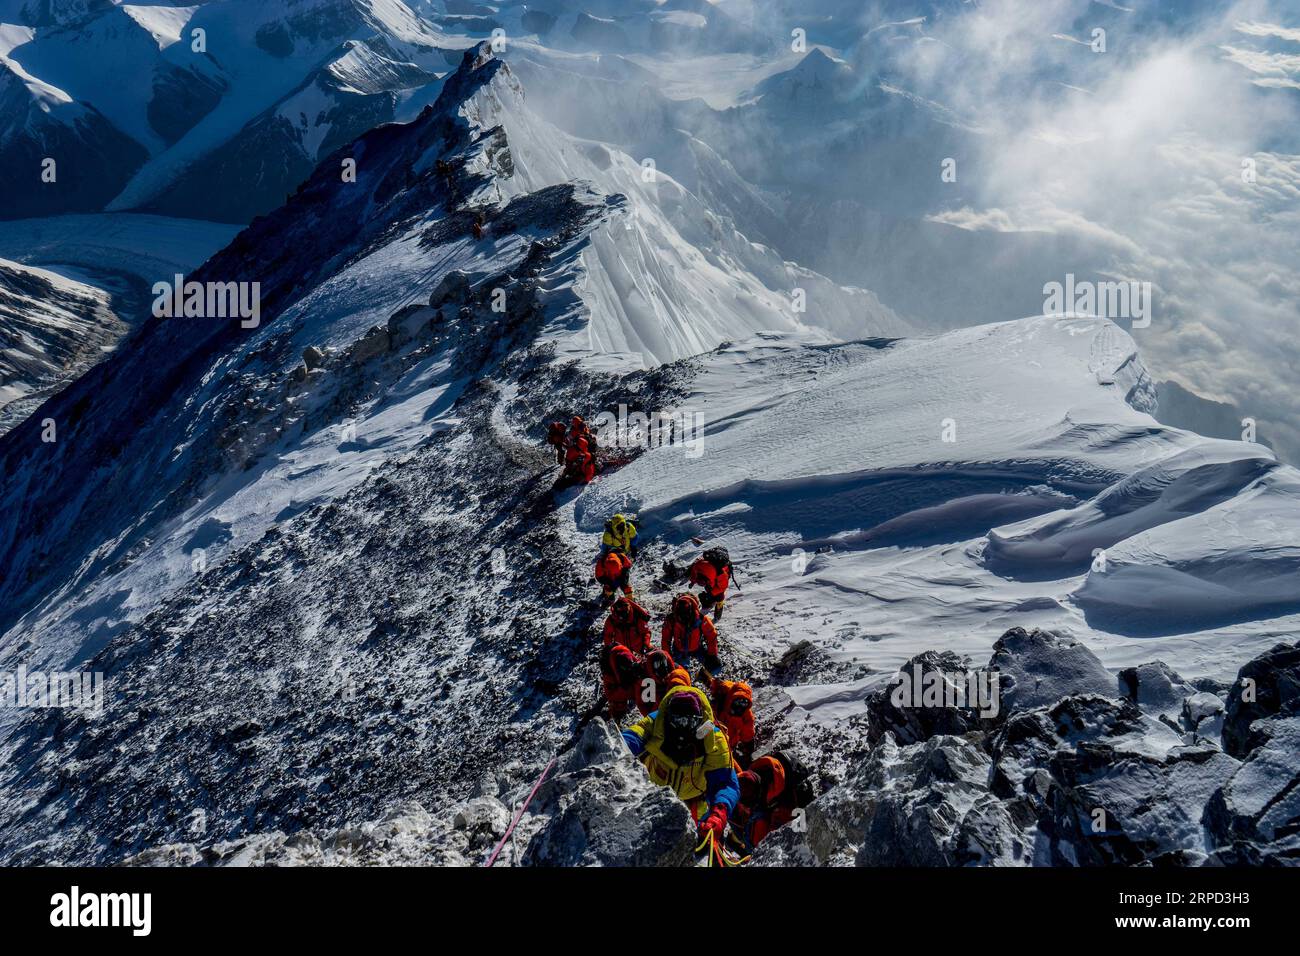 (190721) -- LHASA, 21 luglio 2019 (Xinhua) -- foto scattata da Zhaxi Cering il 24 maggio 2019 mostra gli scalatori che scalano il Monte Qomolangma nella regione autonoma del Tibet nel sud-ovest della Cina. Non sarebbe stato arrogante dire che la carriera fotografica di Zhaxi Cering è iniziata al massimo: La fotografia che lo ha fatto diventare famoso poco più di dieci anni fa è stata scattata in cima alla montagna più alta del mondo. Nel 2008, Zhaxi è stato un membro della squadra di arrampicata cinese che ha portato la torcia olimpica sulla cima del Monte Qomolangma. A malapena 26 anni all'epoca, Zhaxi era stato introdotto nella gilda di alpinisti professionisti della Cina, e h Foto Stock